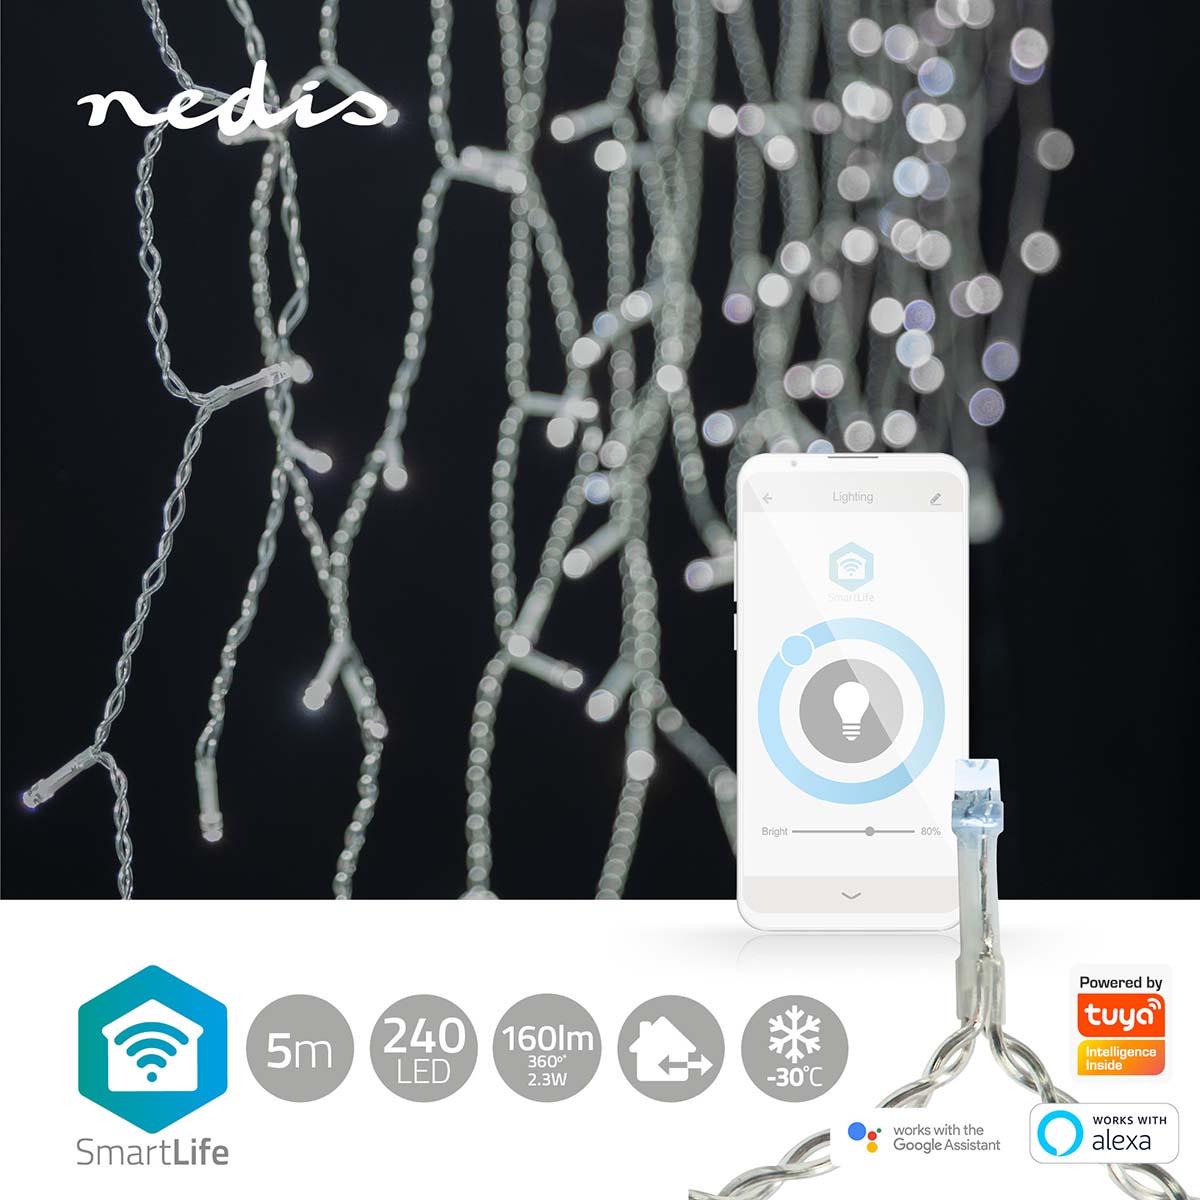 Grinalda Nedis 5m, 240 LEDs branco frio: iluminação inteligente para um Natal encantador, destacando-se pela sofisticação e versatilidade em 48 gotas.